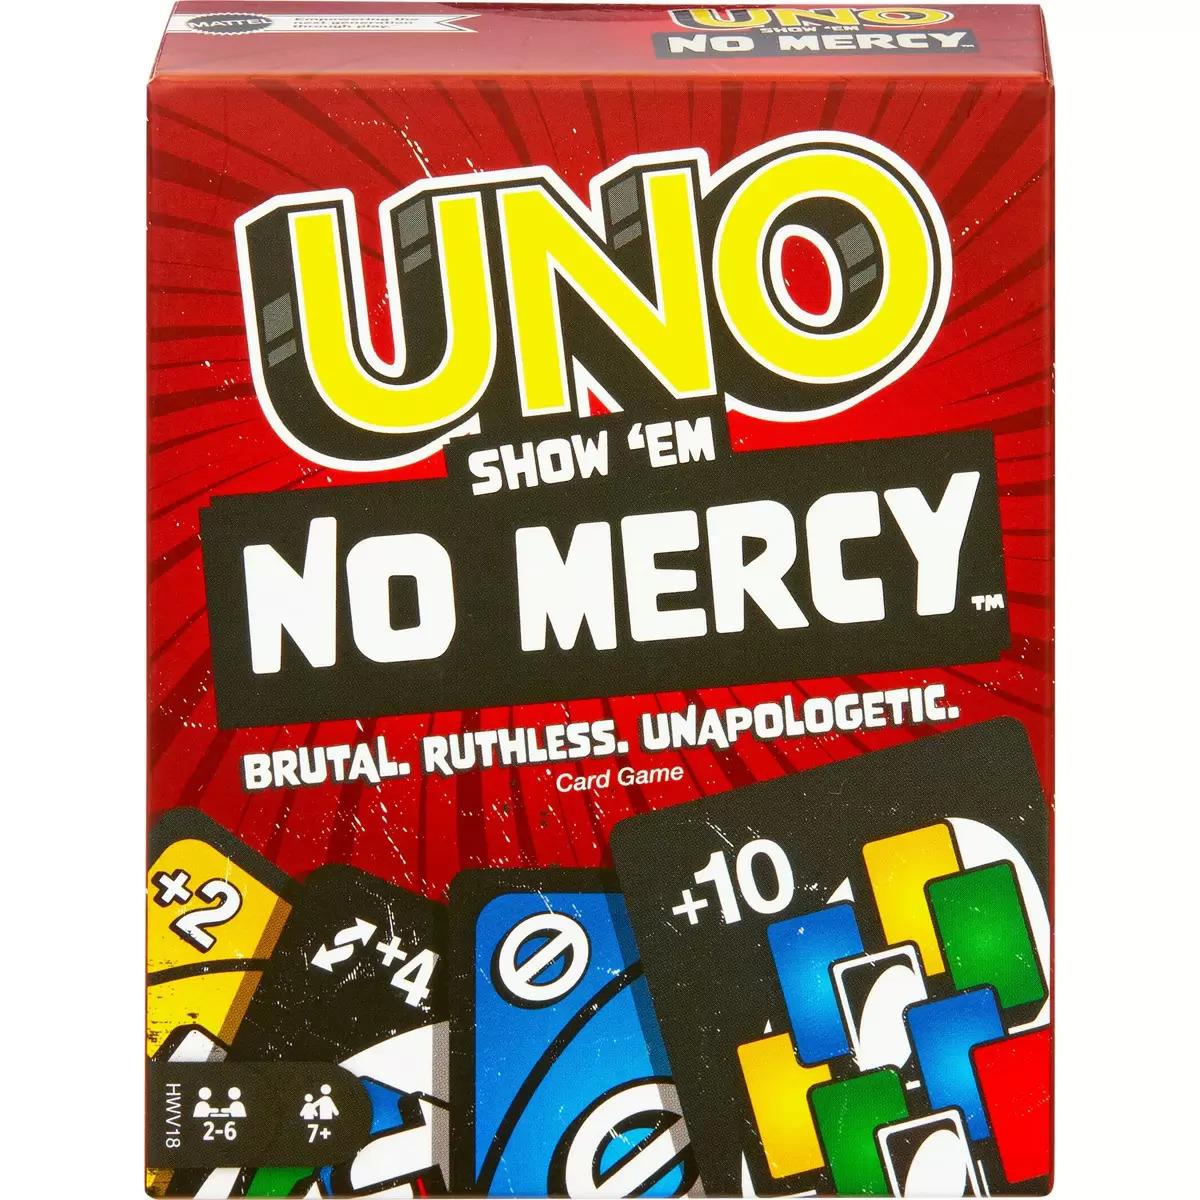 UNO Show em No Mercy Card Game for $9.97